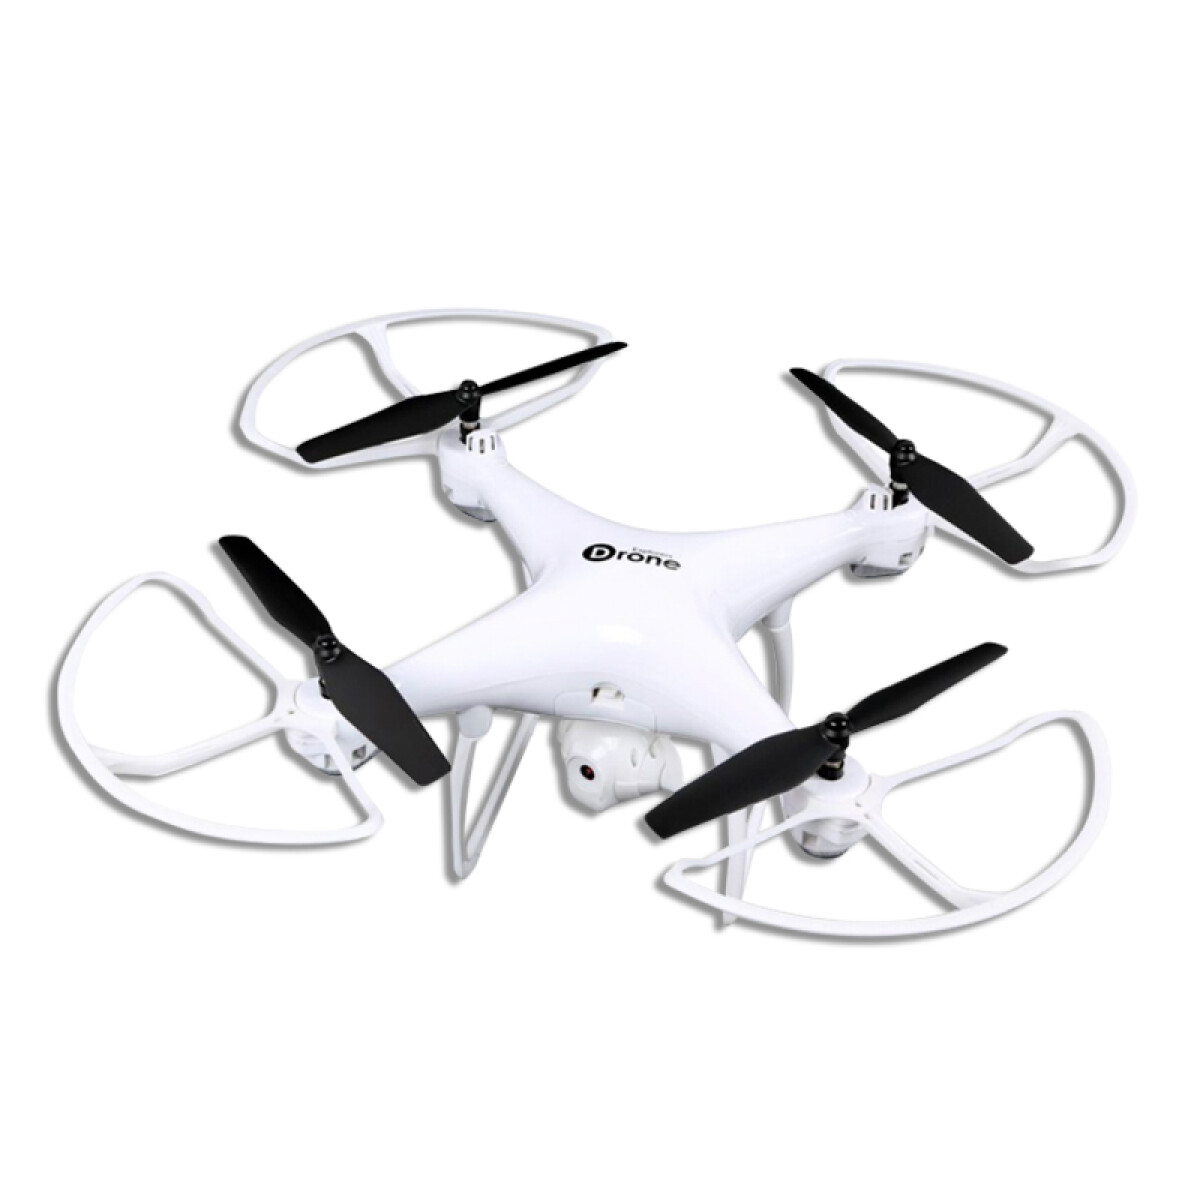 Drone Sky 2.4Ghz, con cámara, luces y control remoto. 